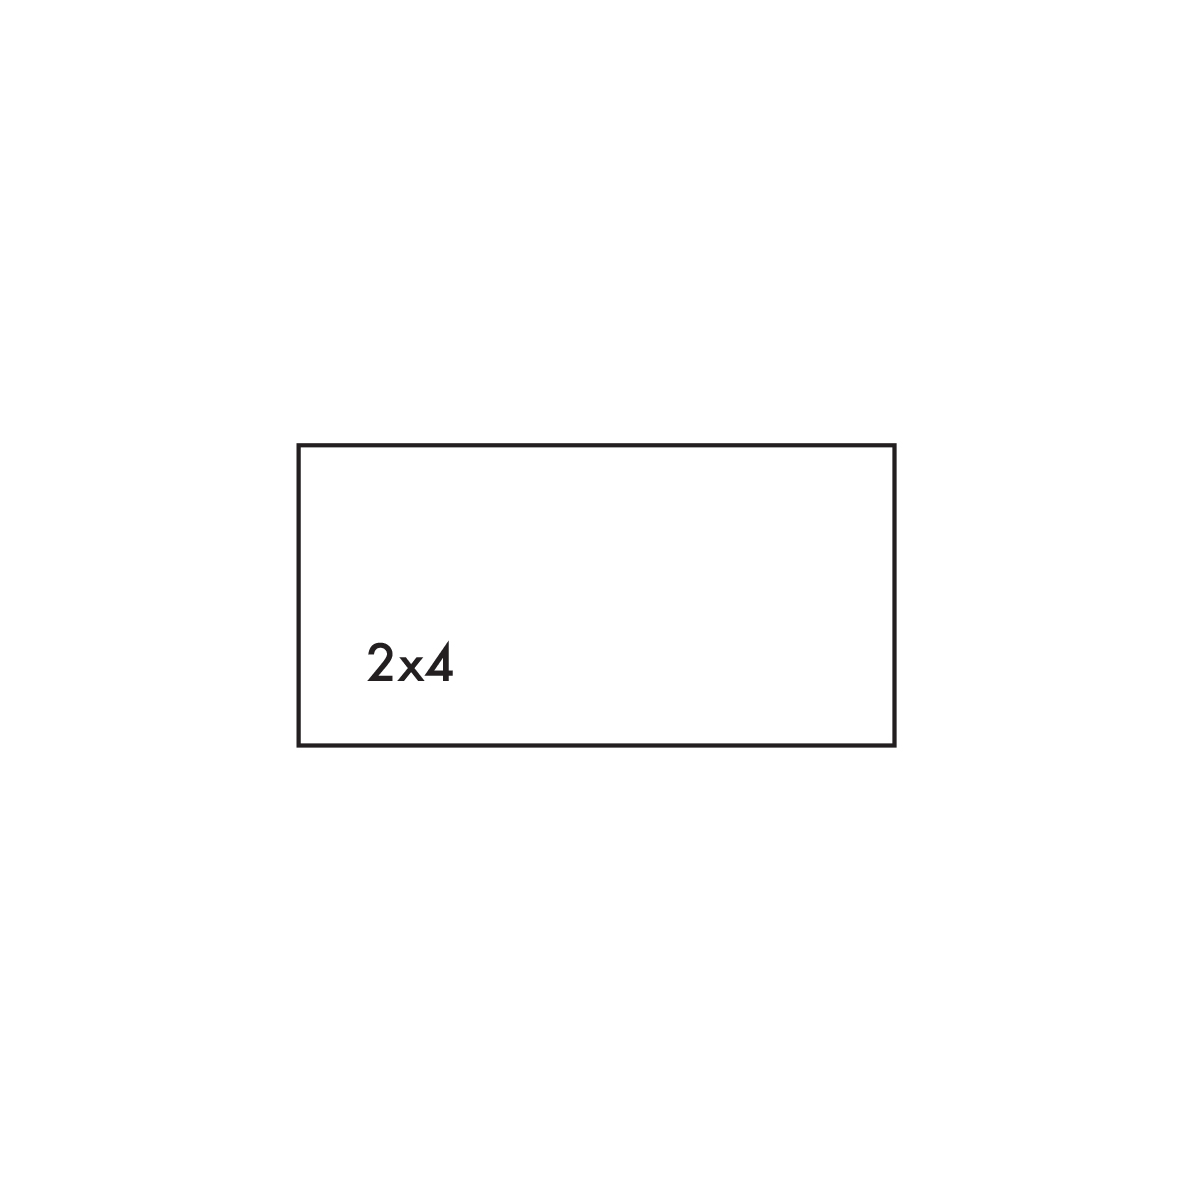 CL24-2x4 Lanc (Copy)